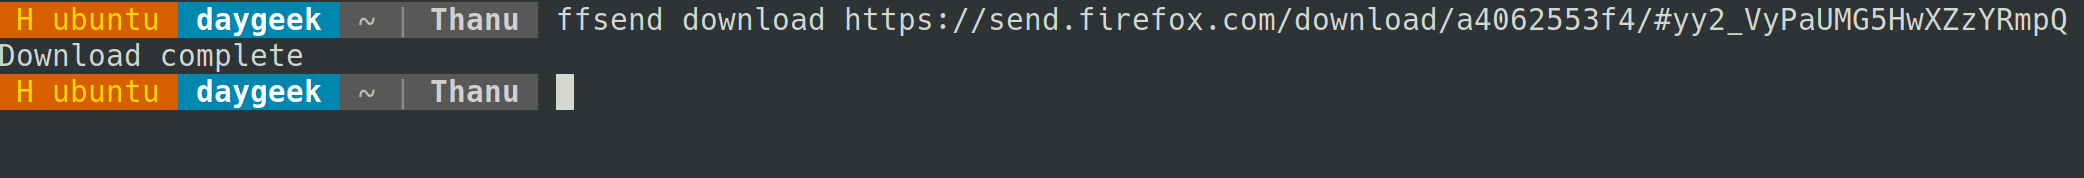 ffsend：在命令行中通过 FireFox Send 分享文件